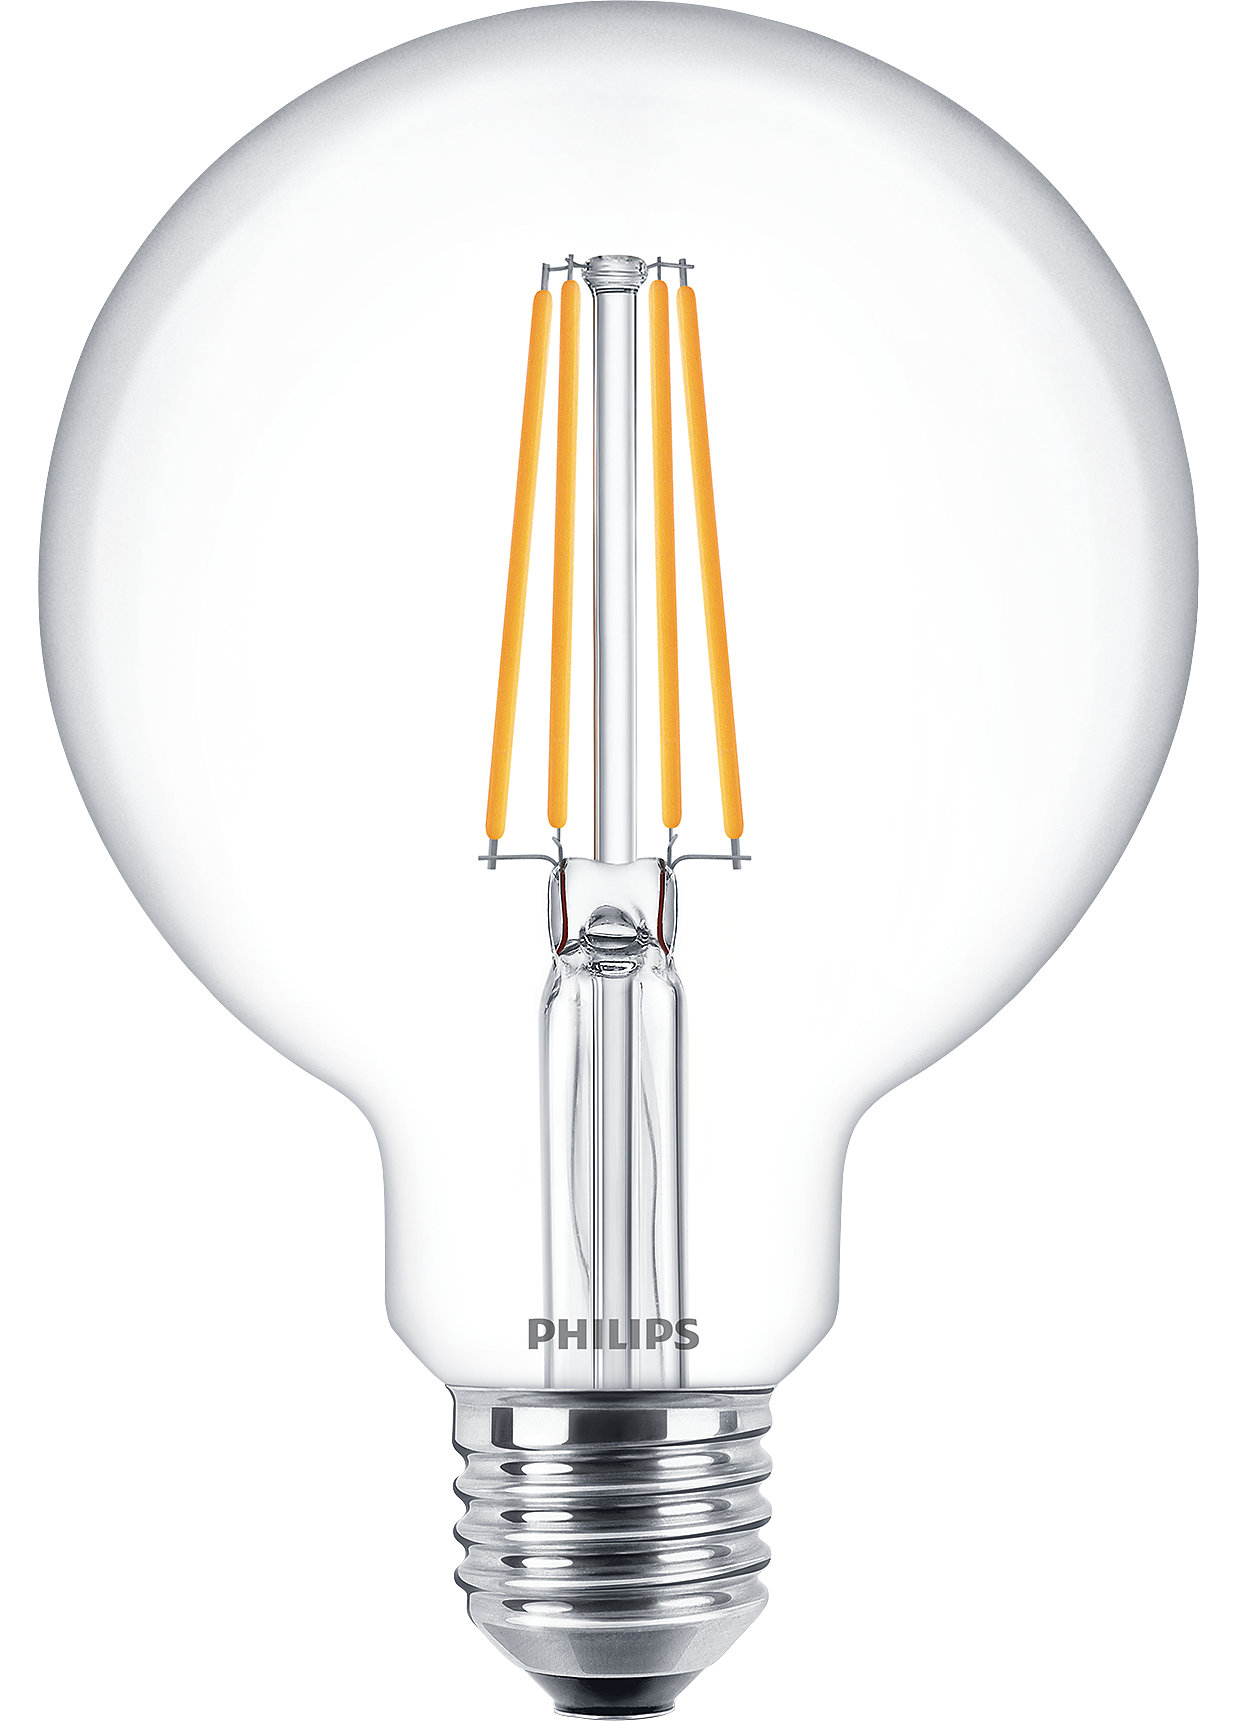 LED světelné zdroje CorePro pro každodenní osvětlení kombinují známé tvary klasických žárovek s výhodami technologie LED s dlouhou životností.